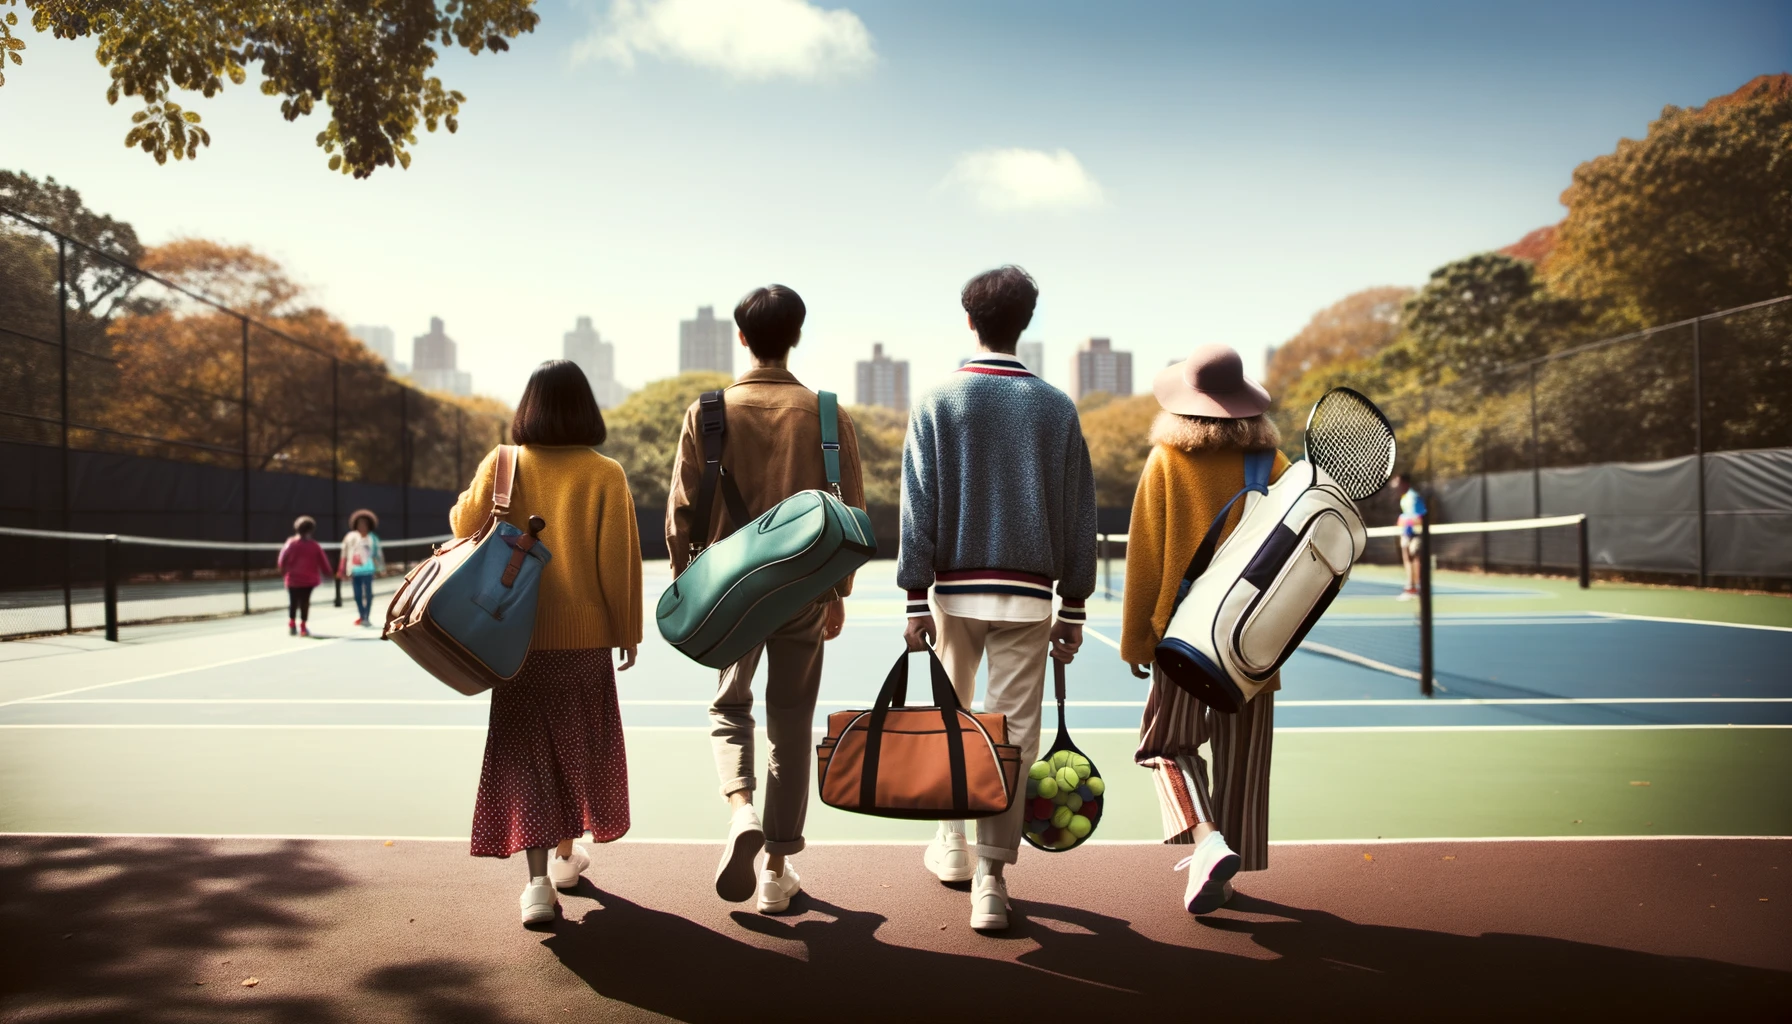 Das Foto zeigt eine Gruppe von drei Personen, die auf einen Tennisplatz zugehen und jeweils eine Tennistasche bei sich tragen.